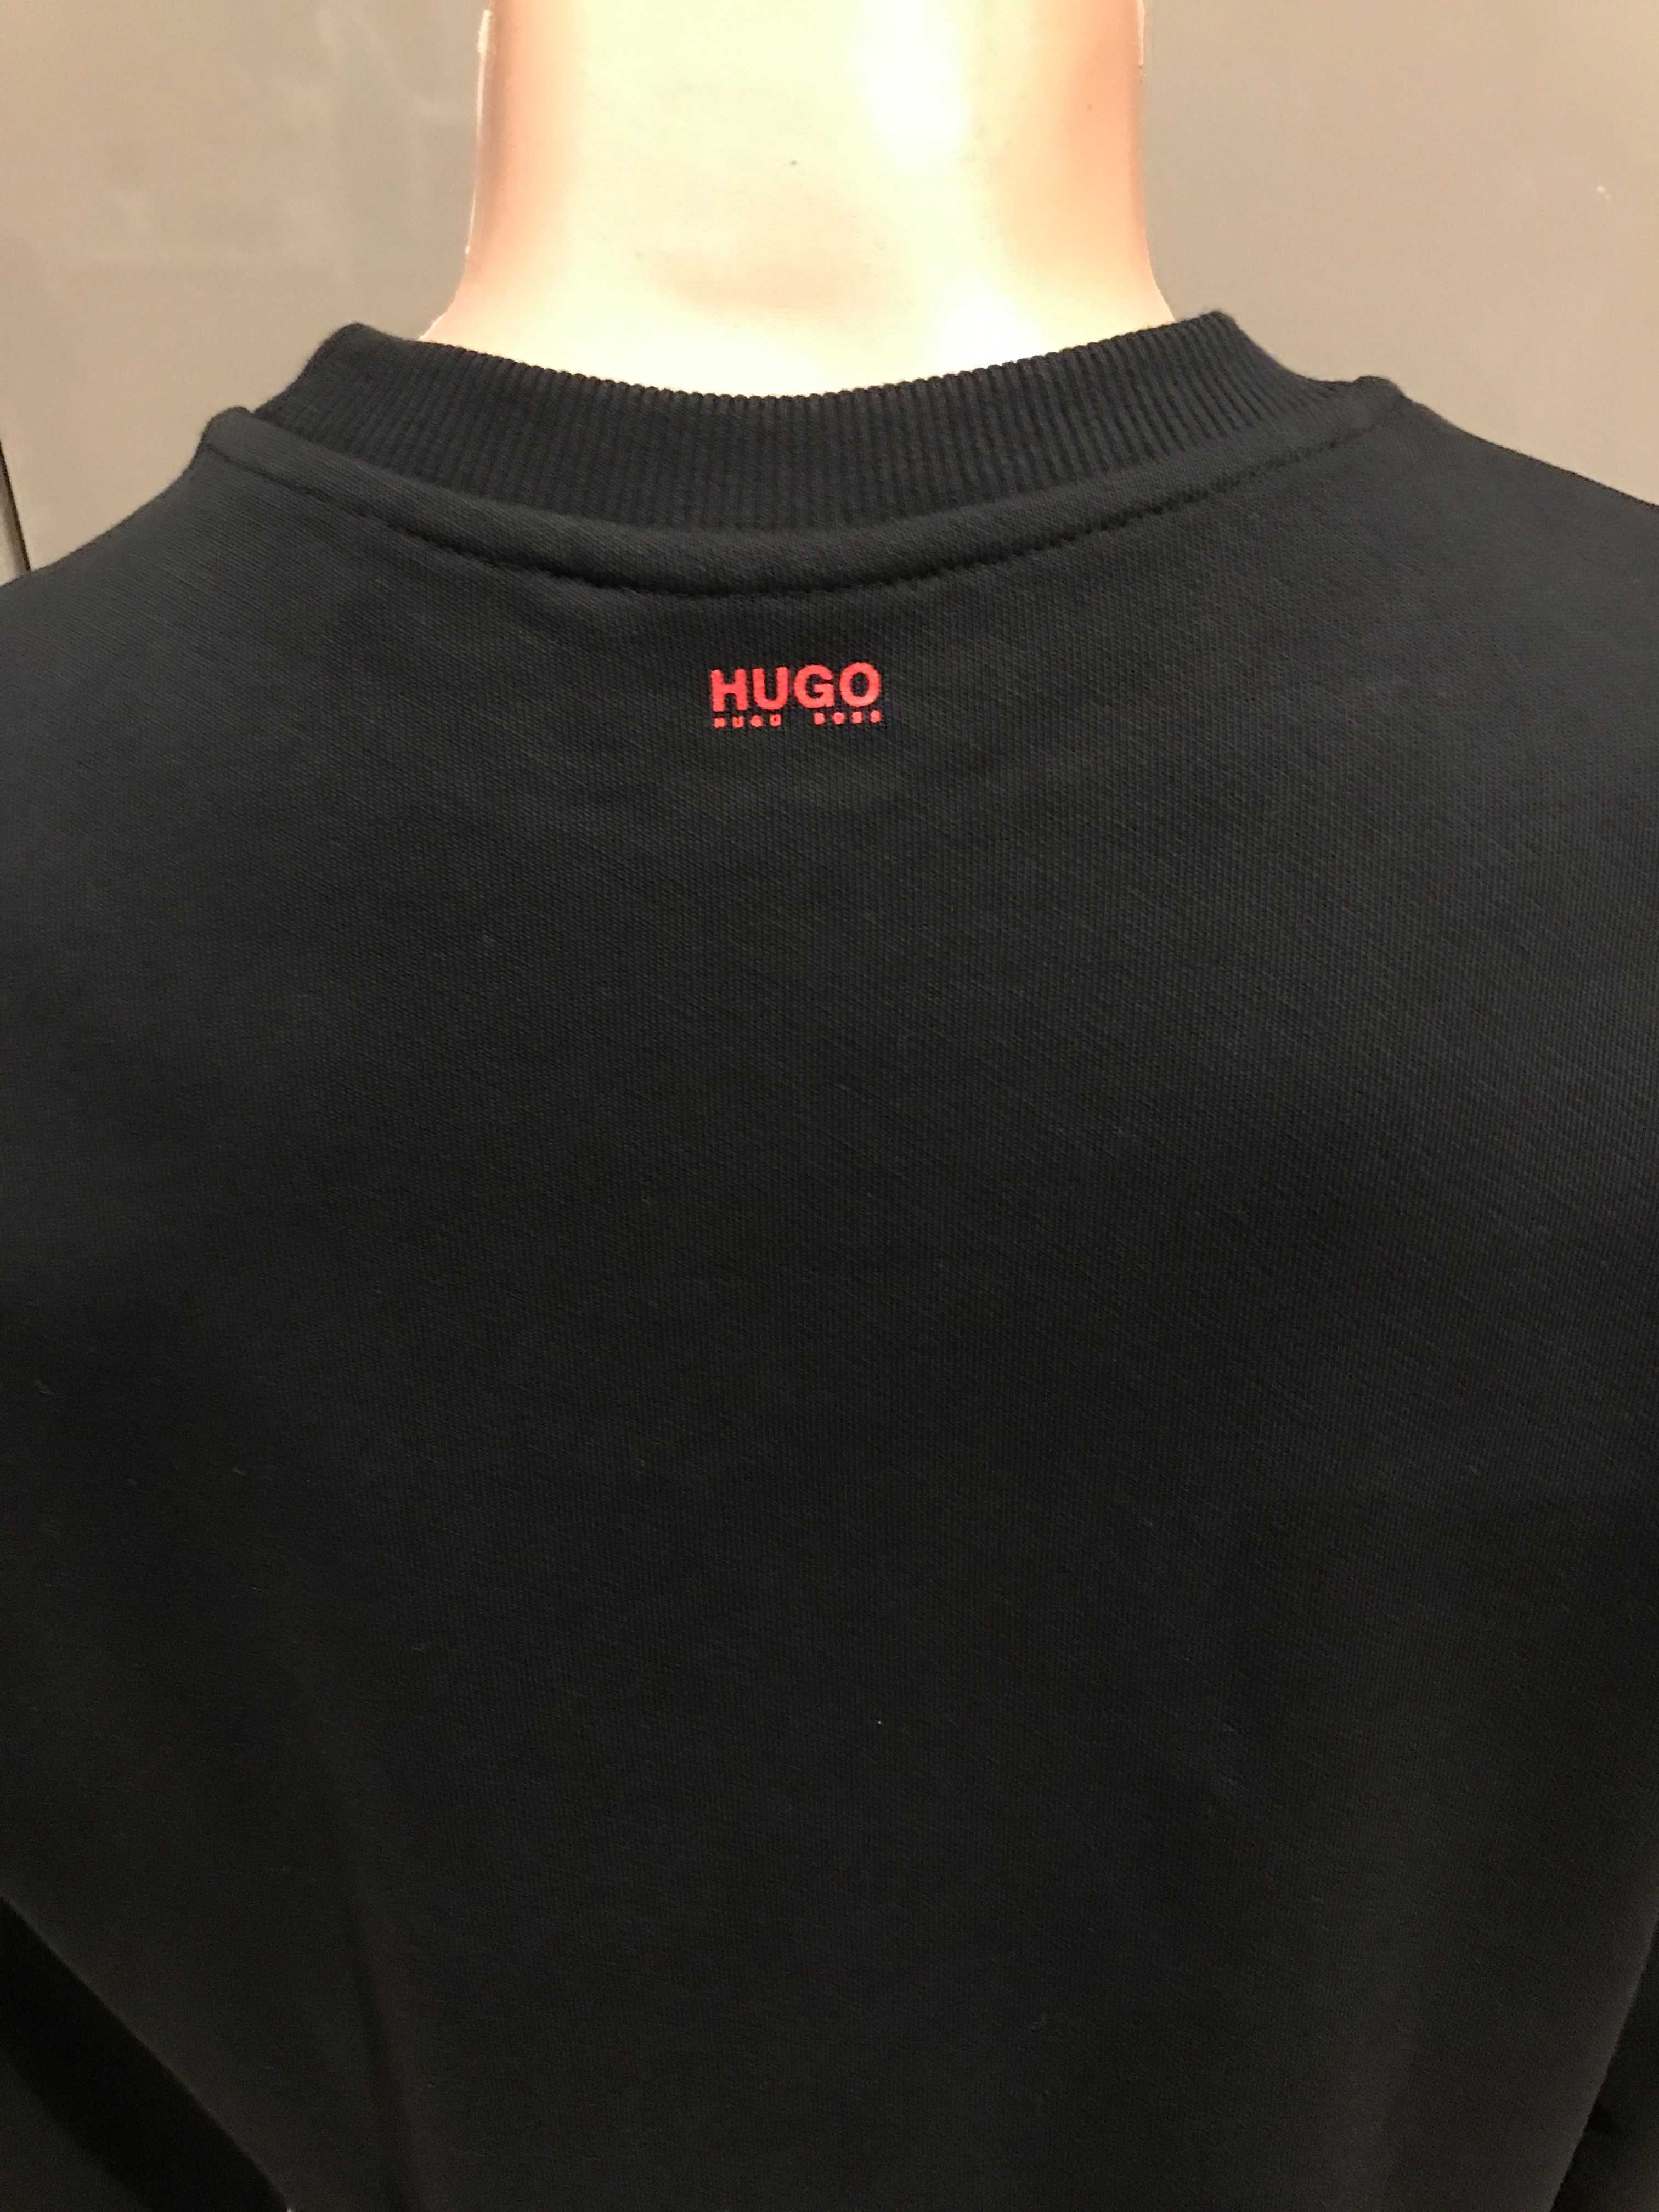 Оригинална блуза Hugo Boss, Принт- Куче, черна, размери: M